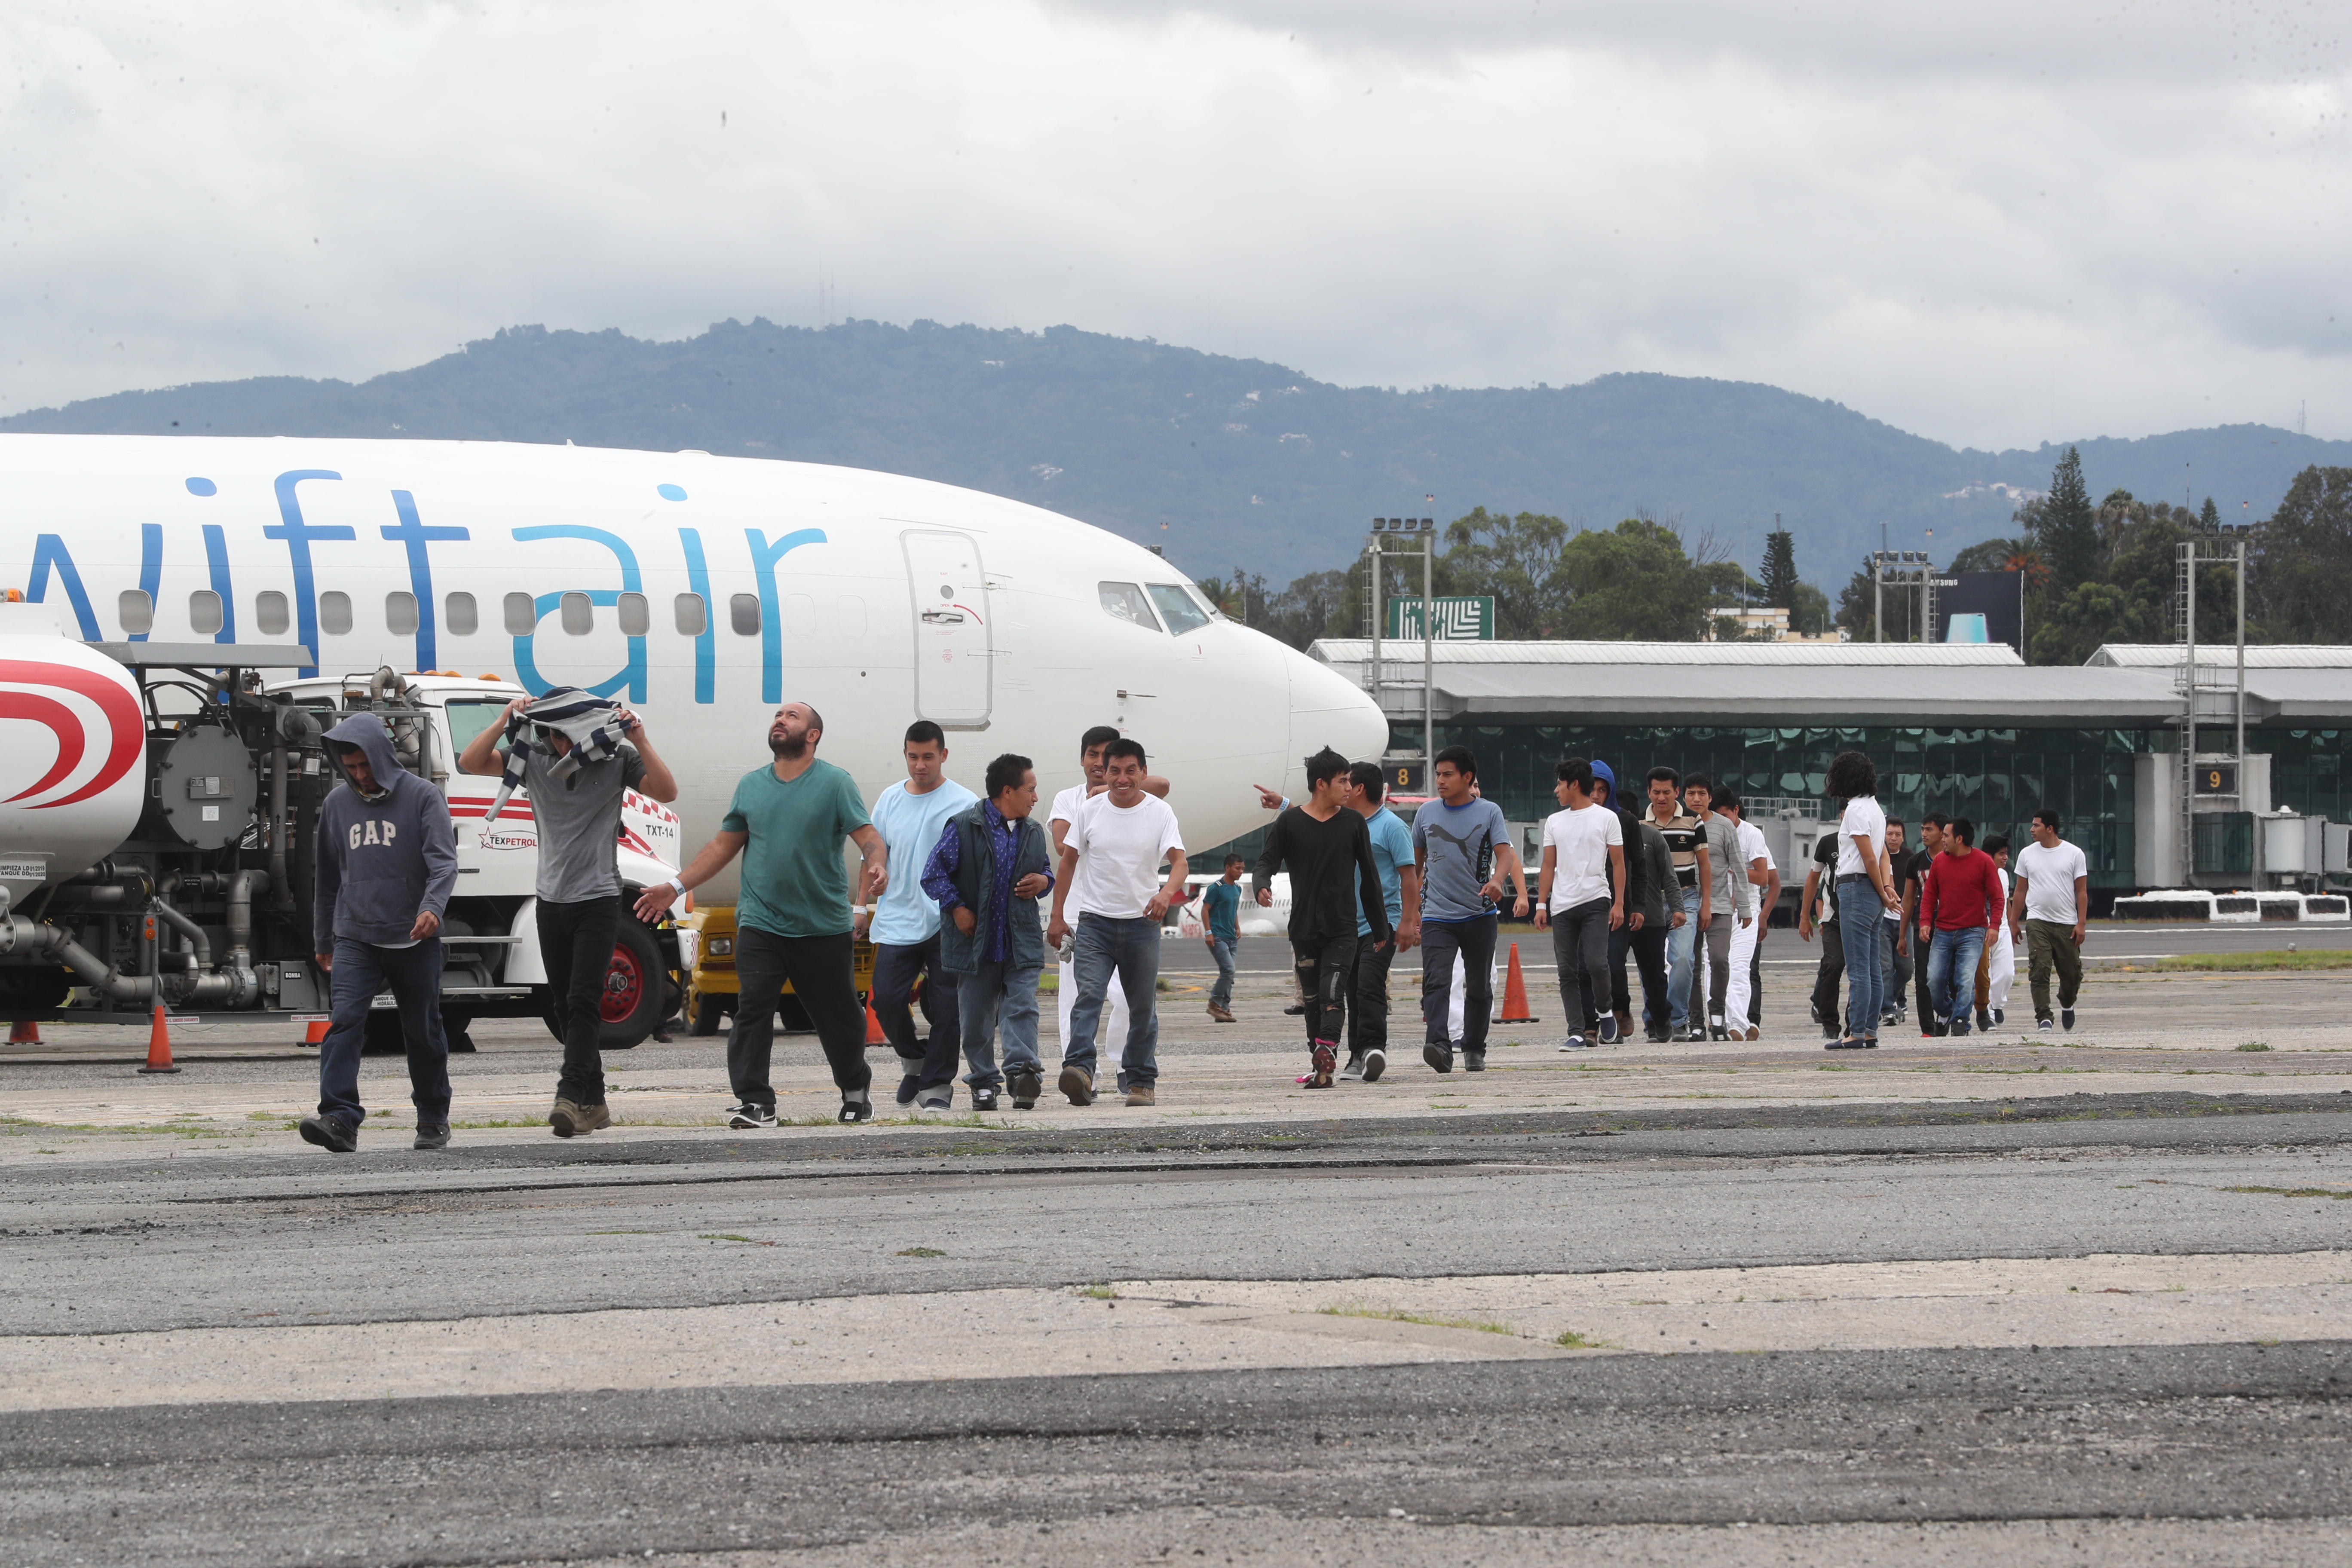 A diario son deportados decenas de guatemaltecos desde Estados Unidos, muchos de los cuales son del área rural de la provincia. (Foto Prensa Libre: Érick Ávila)